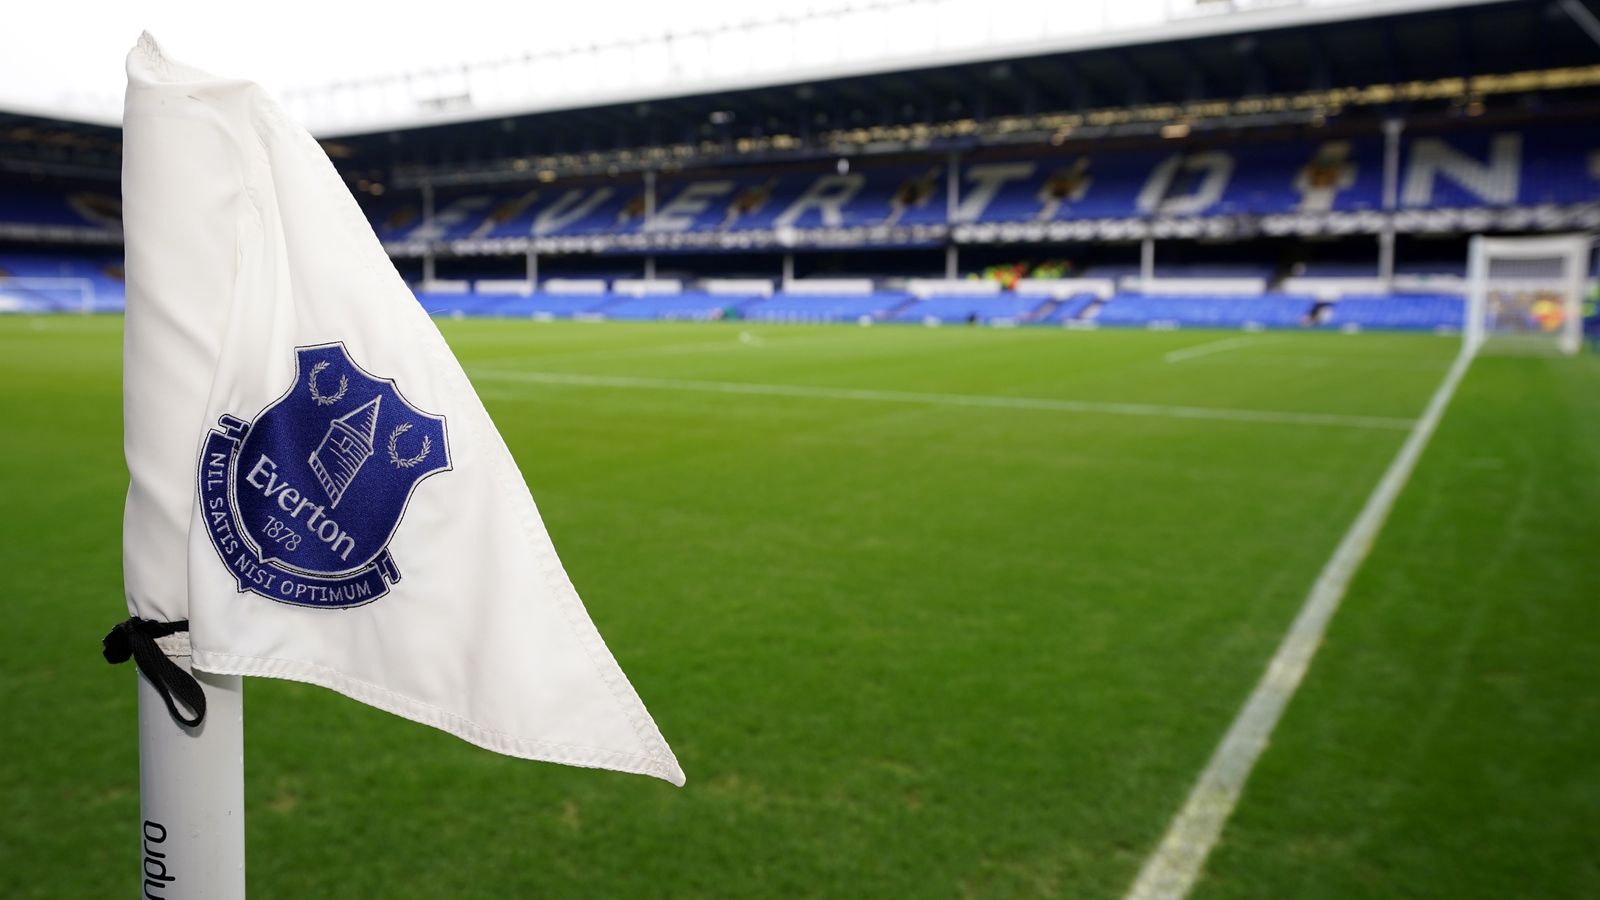 Aquisição do Everton: 777 Partners, com sede em Miami, perto de acordo para assumir totalmente o controle do clube da Premier League |  Notícias de futebol